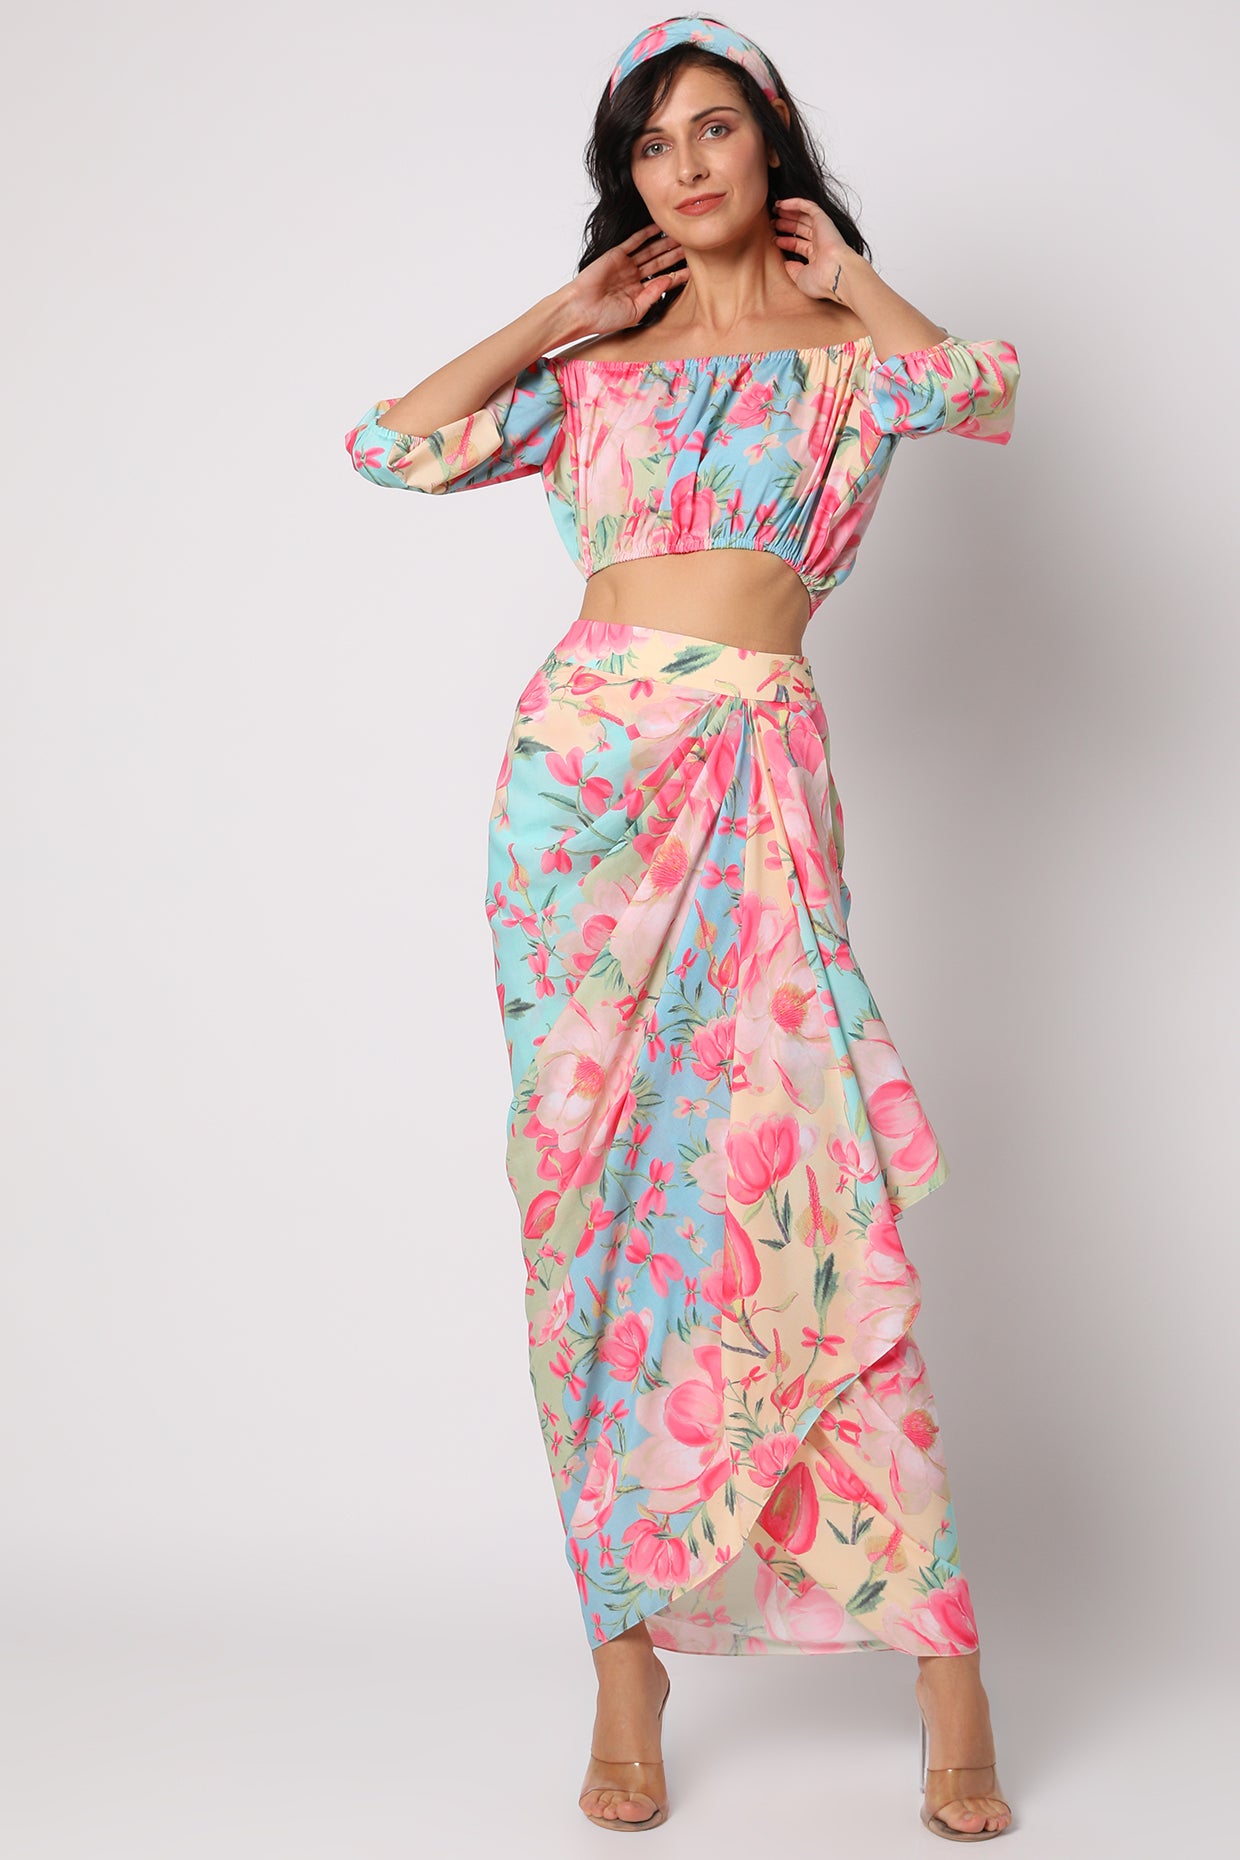 gopi vaid Khushi Off Shoulder Top with Wrap Skirt blue resort wear online shopping melange singapore indian designer wear